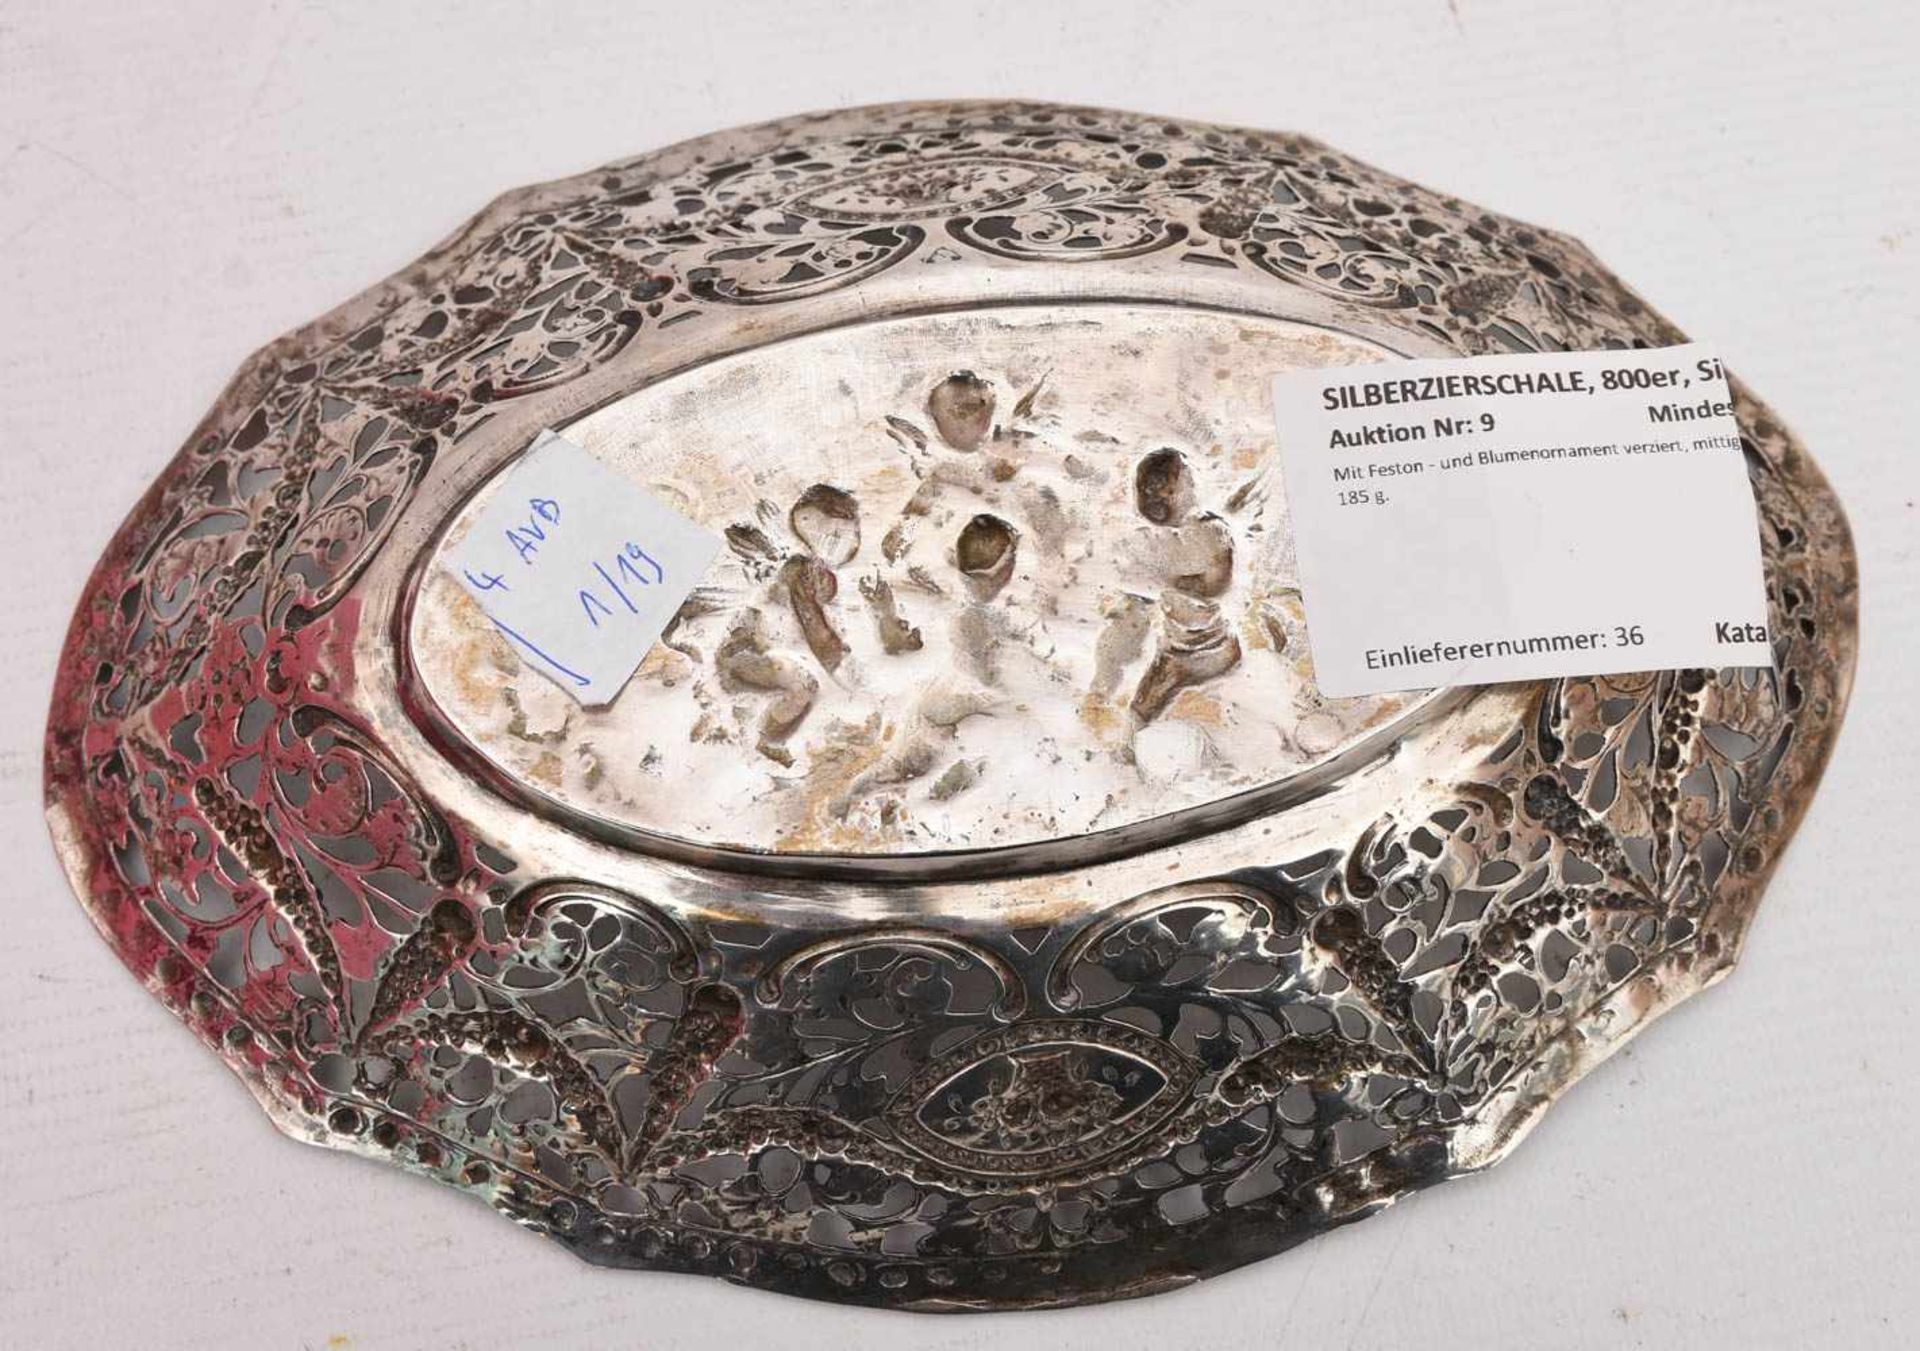 SILBERZIERSCHALE, 800er, Silber.Mit Feston - und Blumenornament verziert, mittig 4 Putti. 185 g. - Bild 5 aus 5